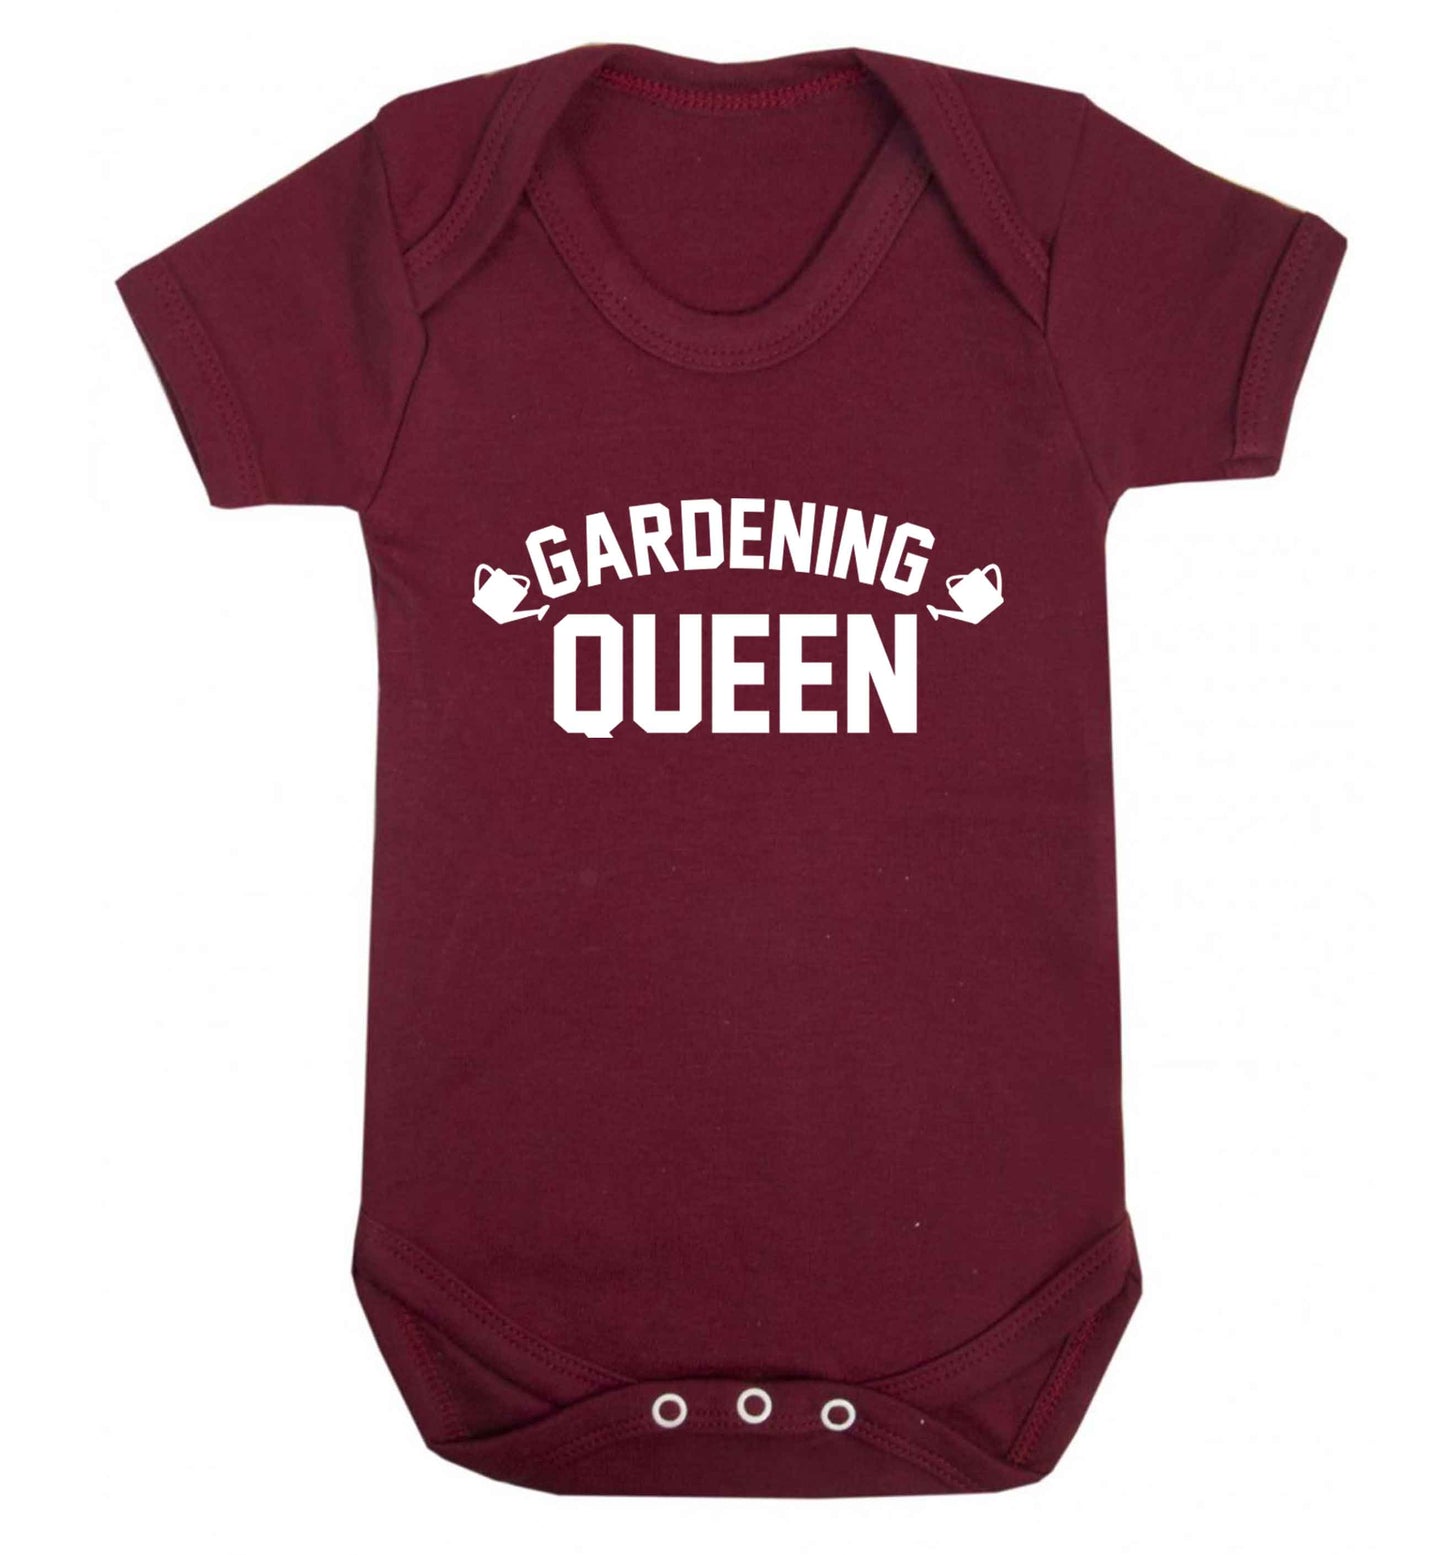 Gardening queen Baby Vest maroon 18-24 months